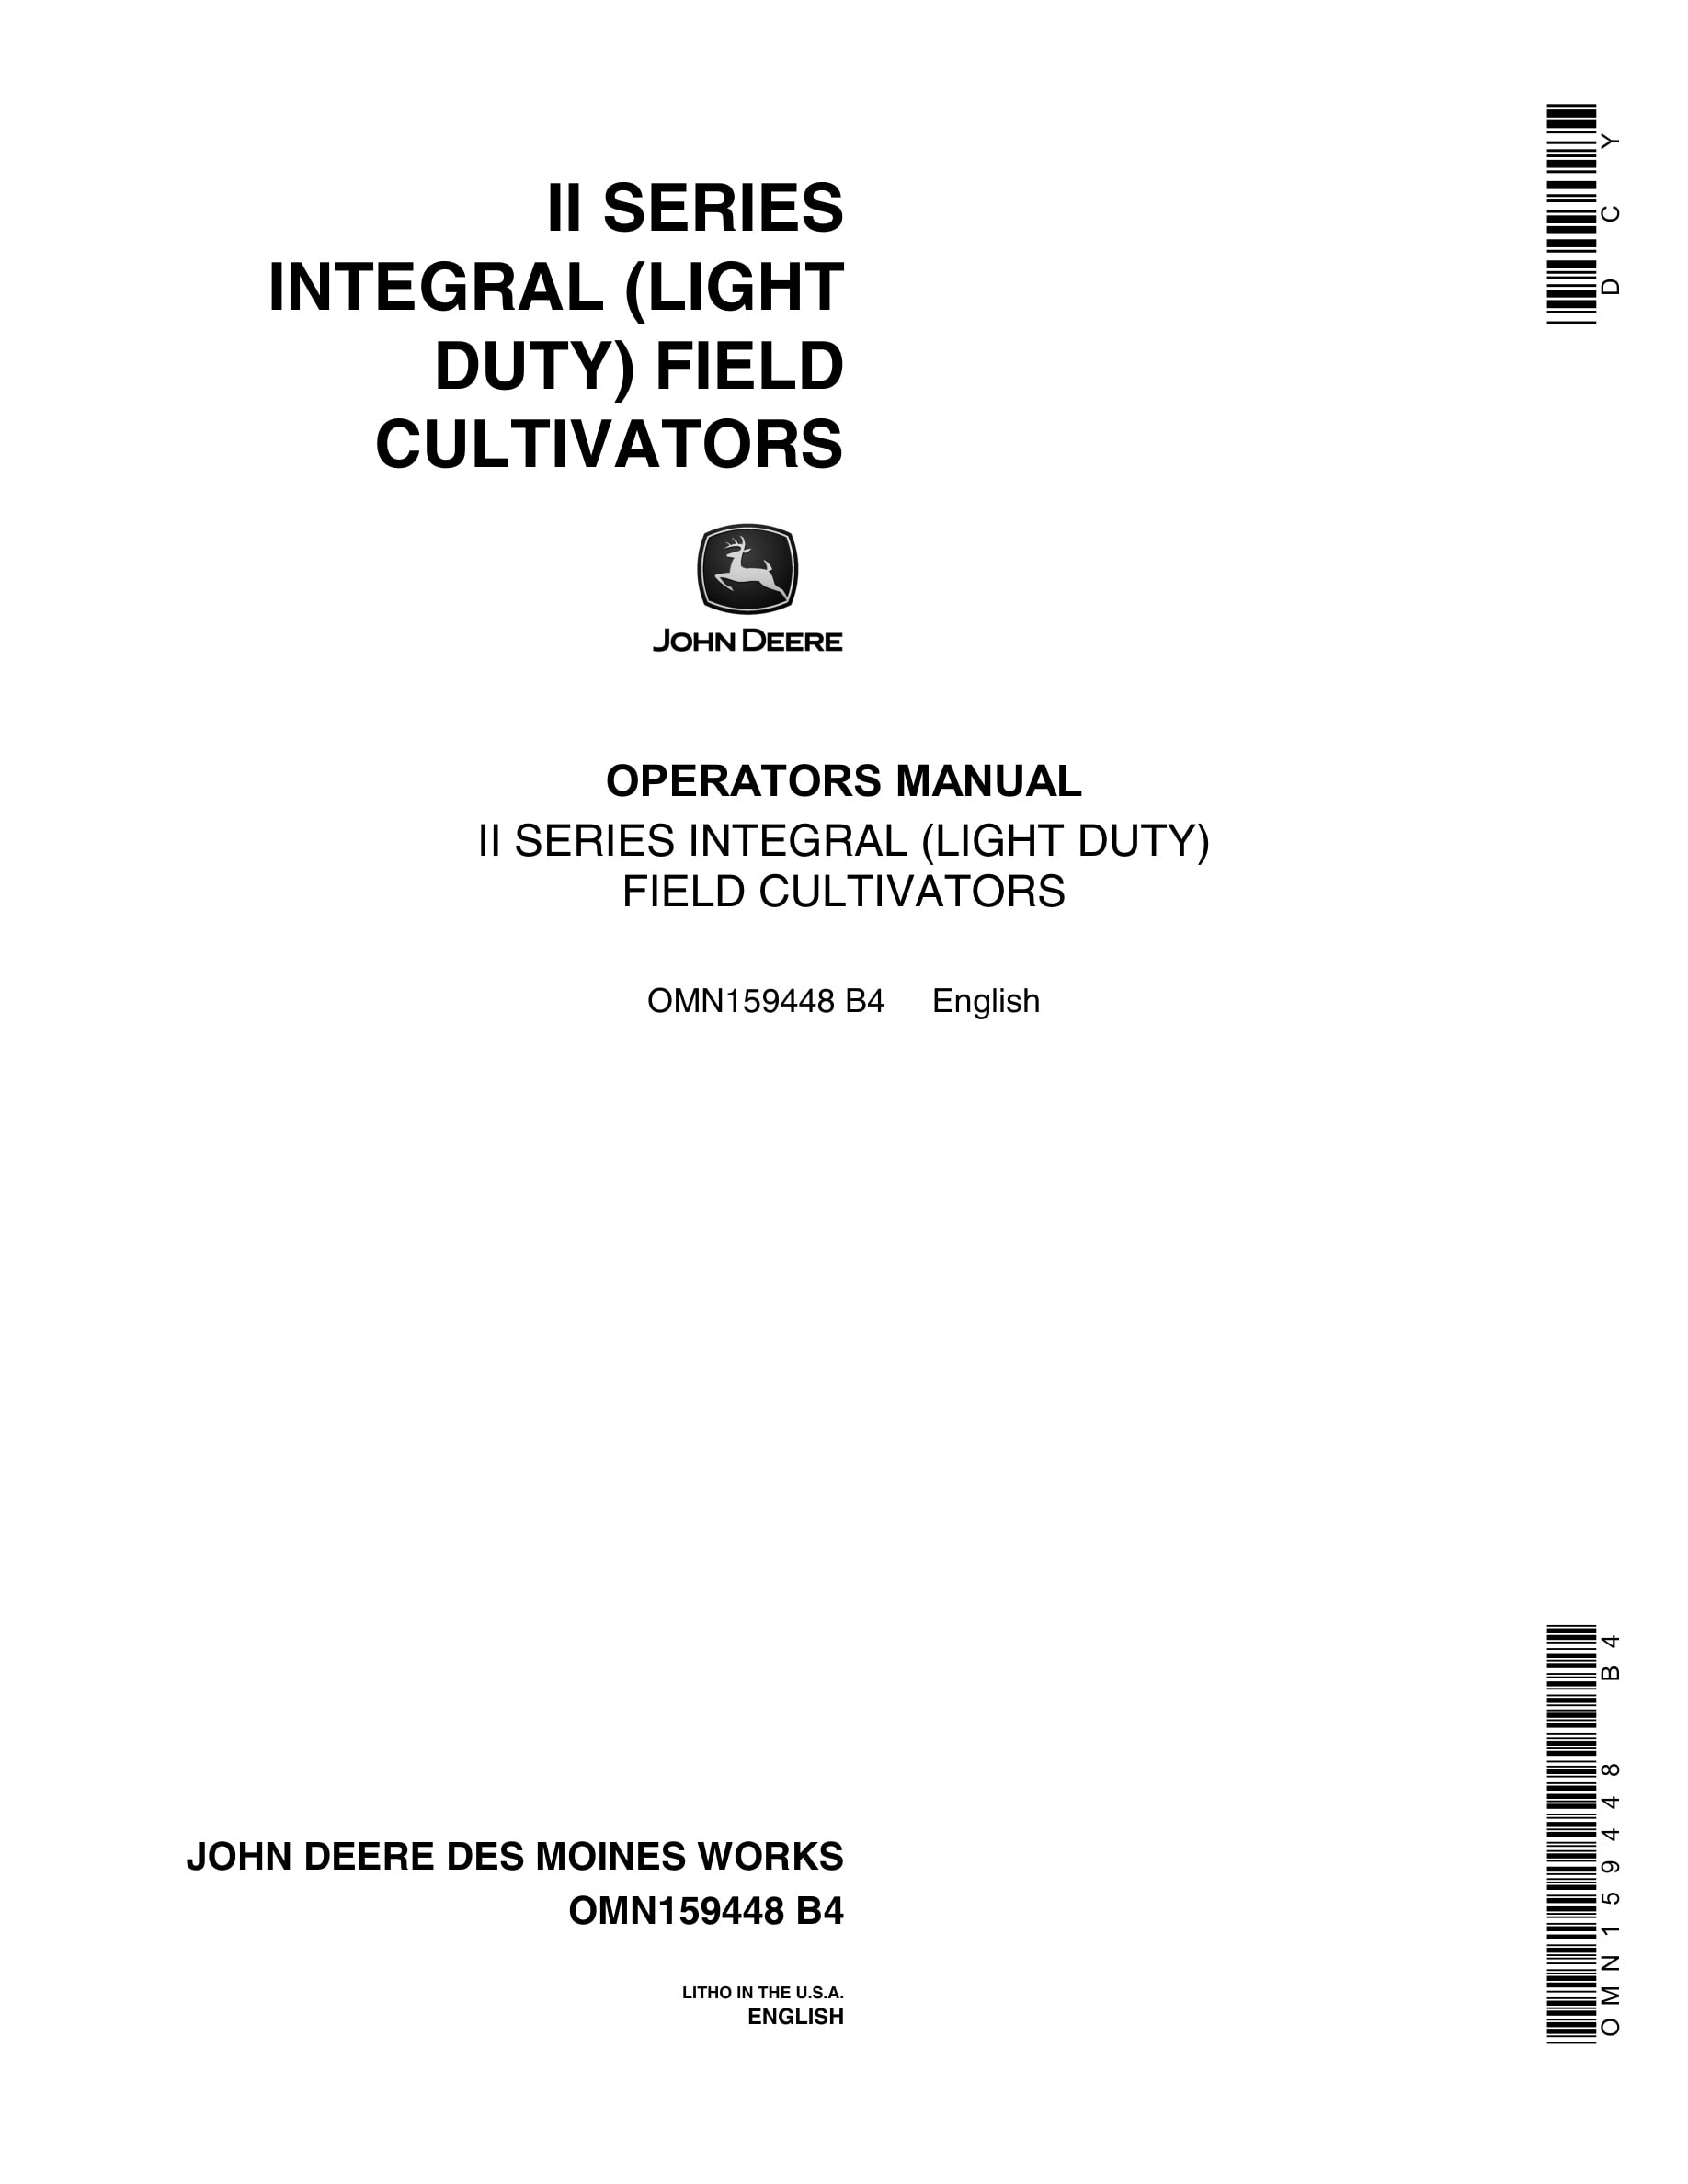 John Deere II SERIES INTEGRAL (LIGHT DUTY) FIELD CULTIVATOR Operator Manual OMN159448-1